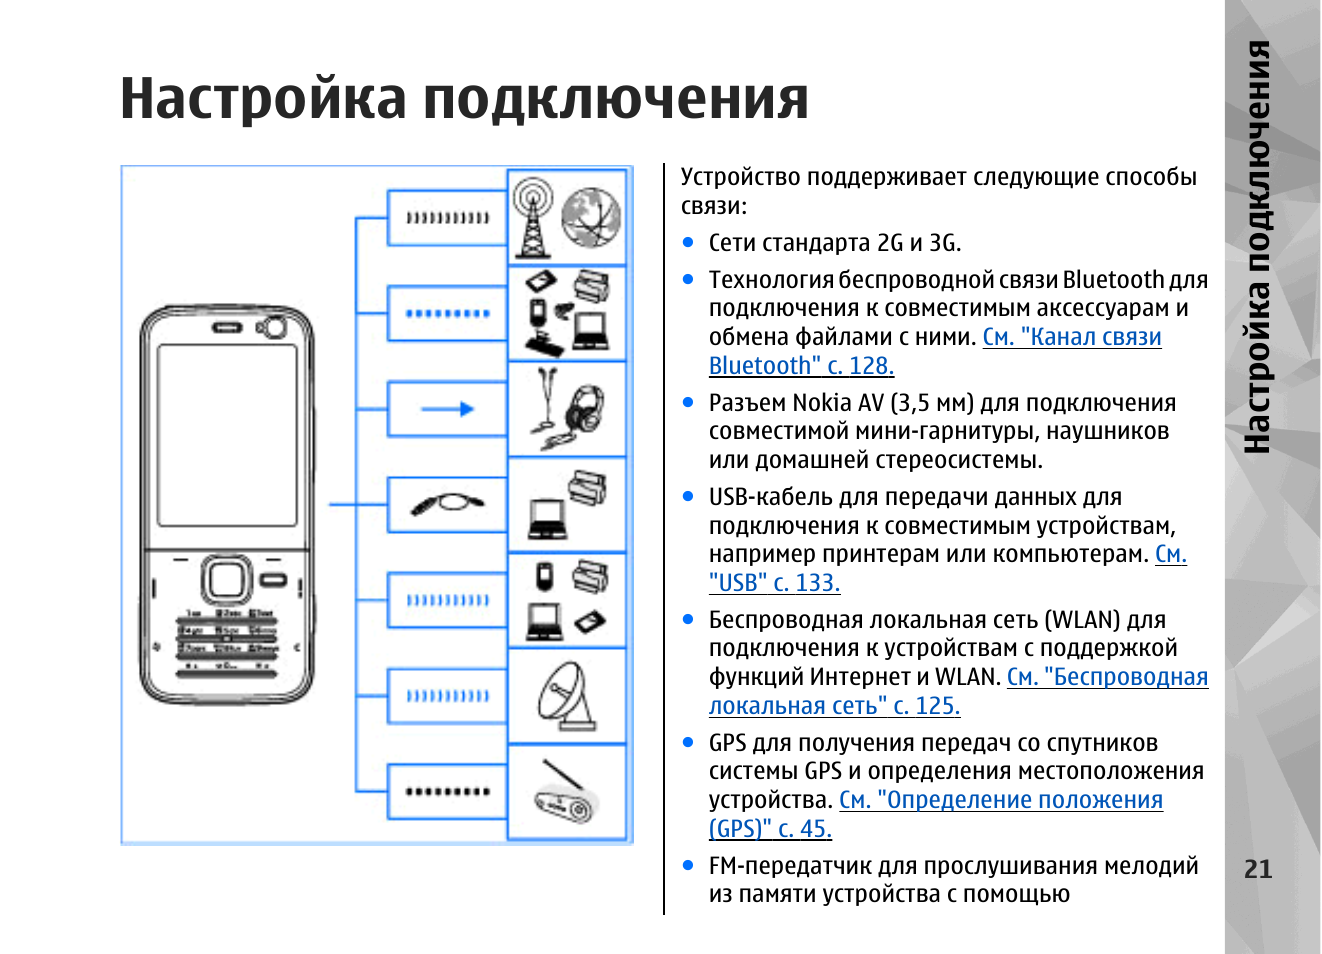 Телефоны нокиа инструкция. Инструкция Nokia кнопочный. Телефон нокия кнопочный инструкция по применению. Телефон нокиа кнопочный старые модели инструкция. Телефон нокиа кнопочный старые модели инструкция по применению.